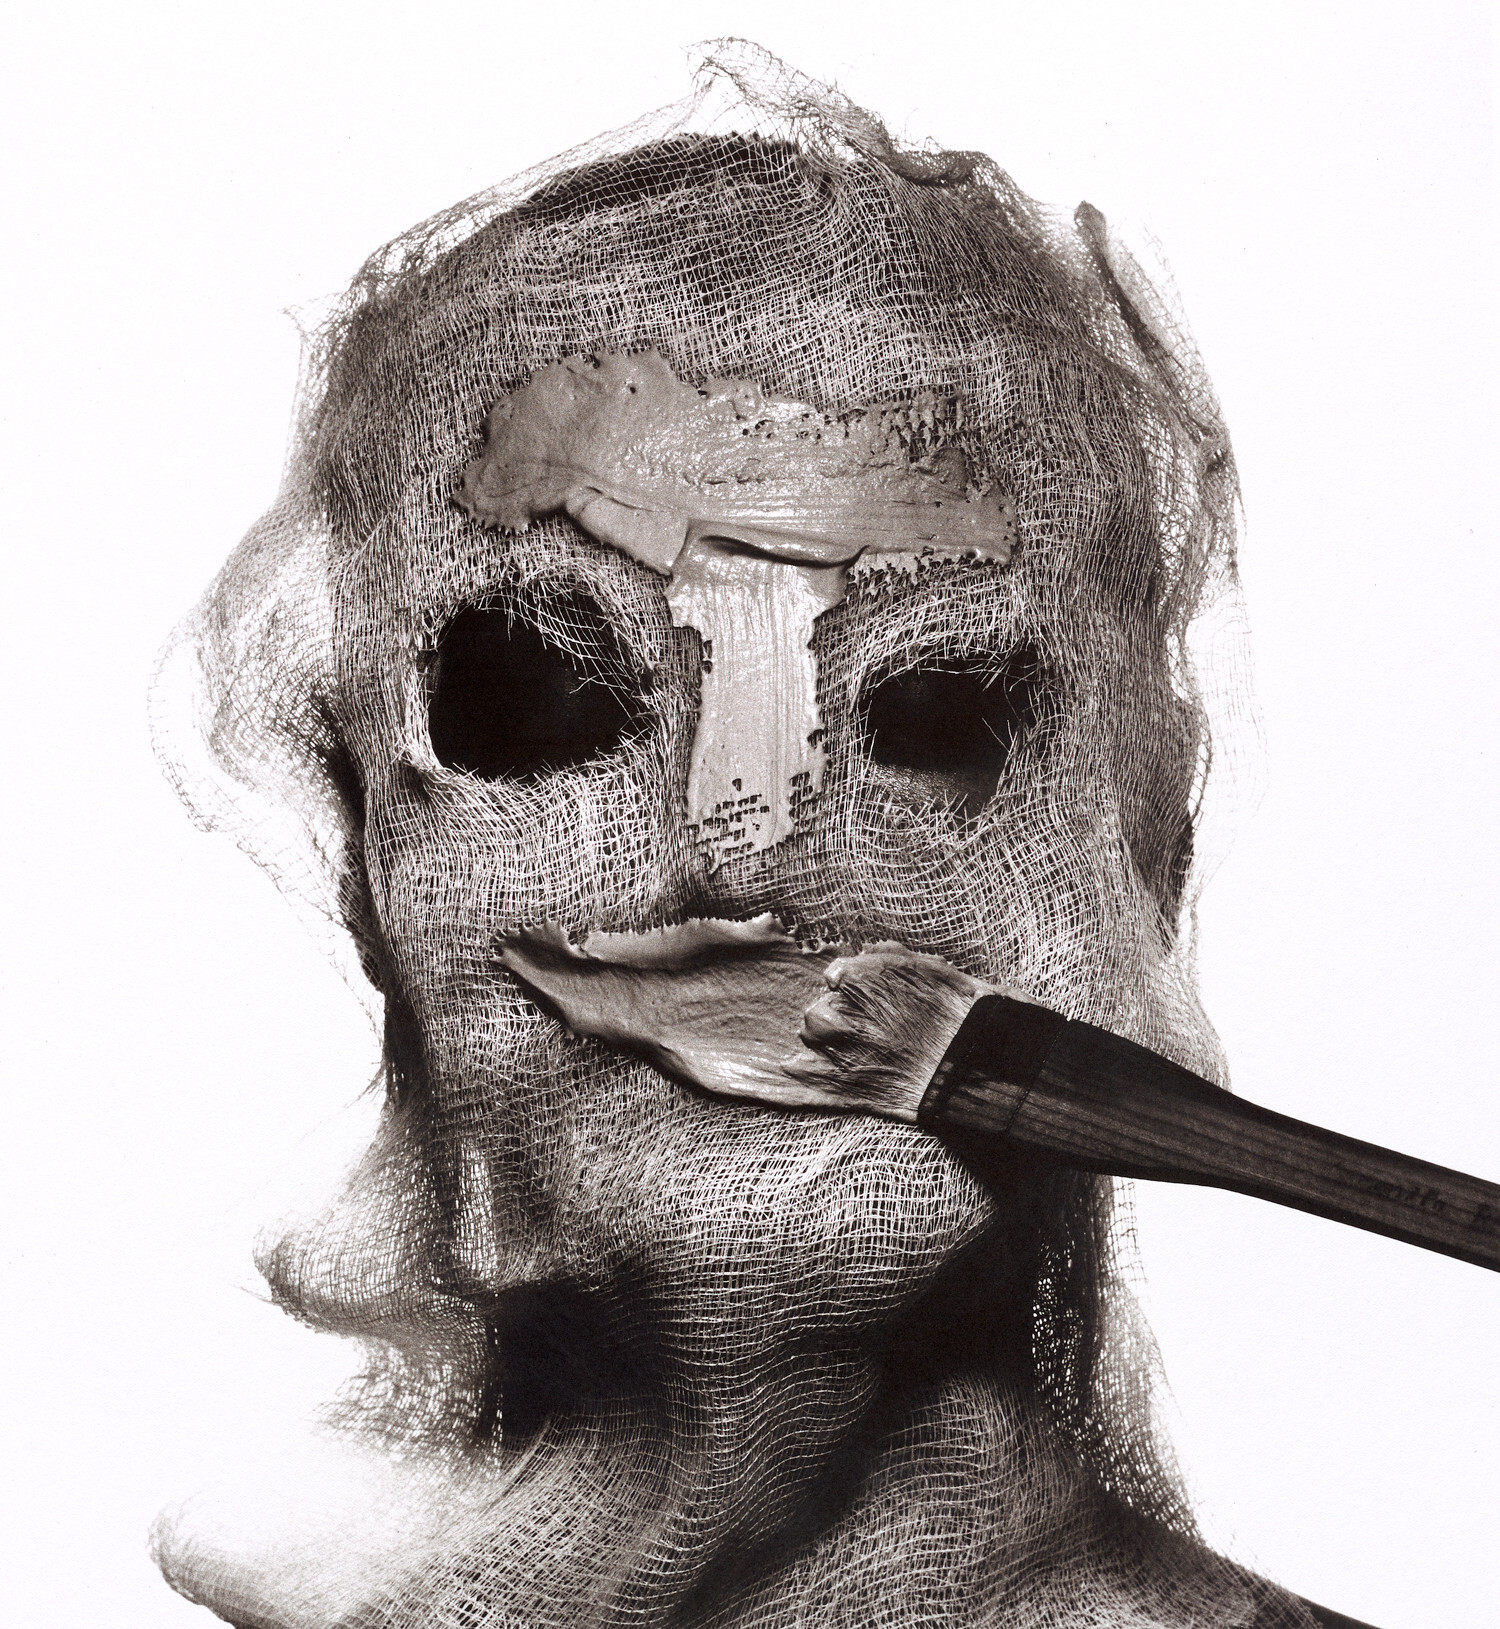 Косметические процедуры с марлевой маской, Нью-Йорк, 1997 г. Фотограф Ирвин Пенн